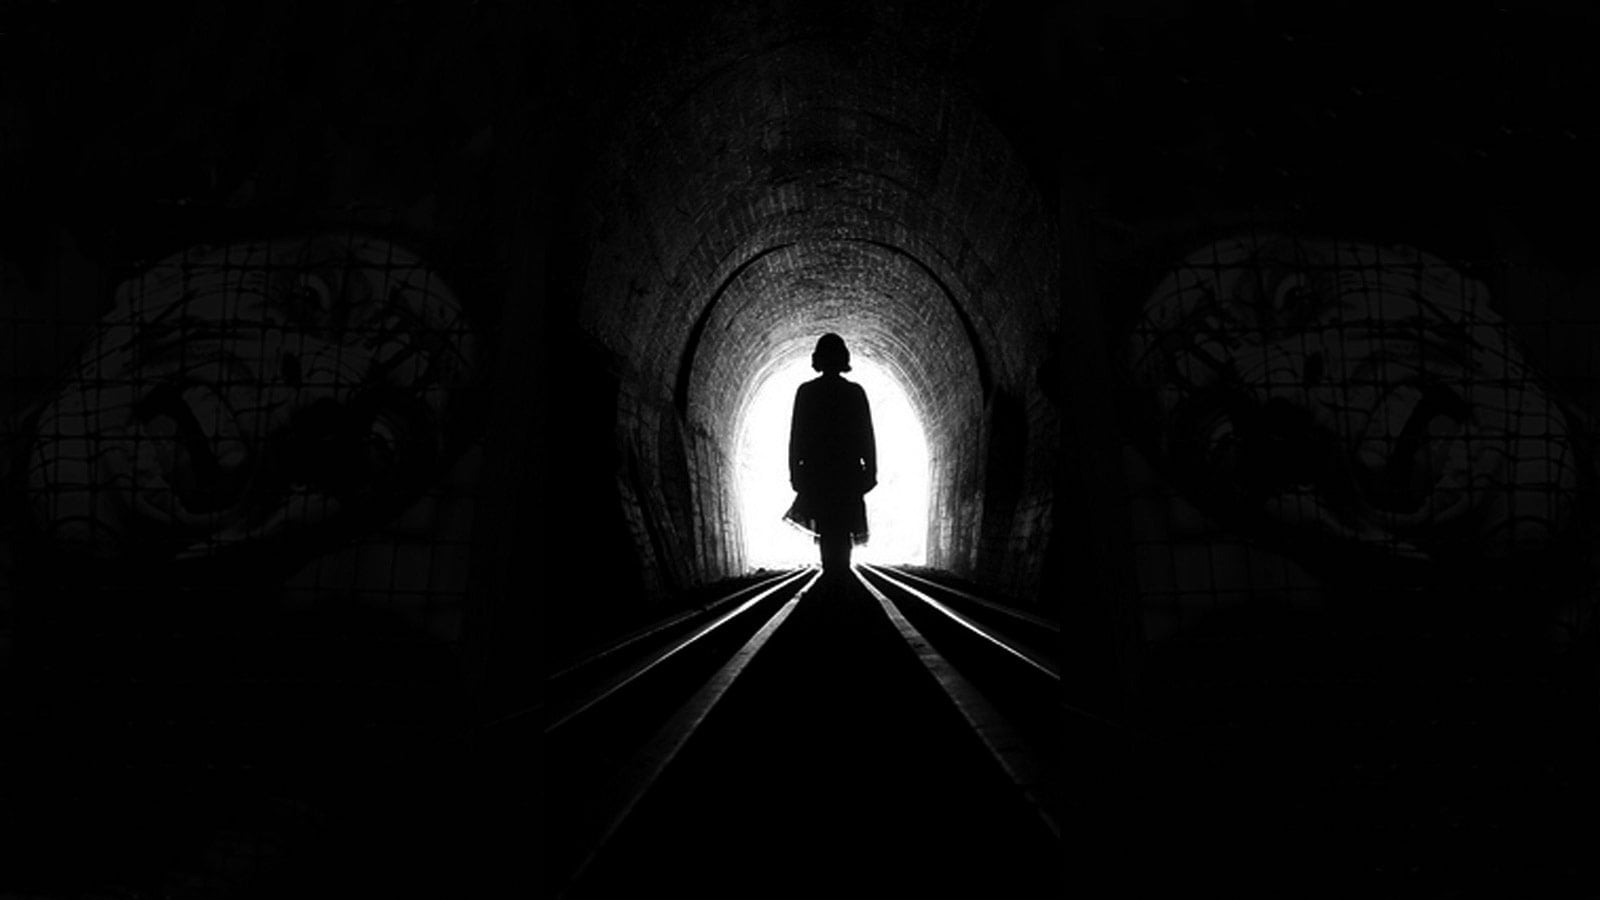 تونل وحشت چیست؟ معرفی بهترین تونل وحشت تهران و سایر شهرها